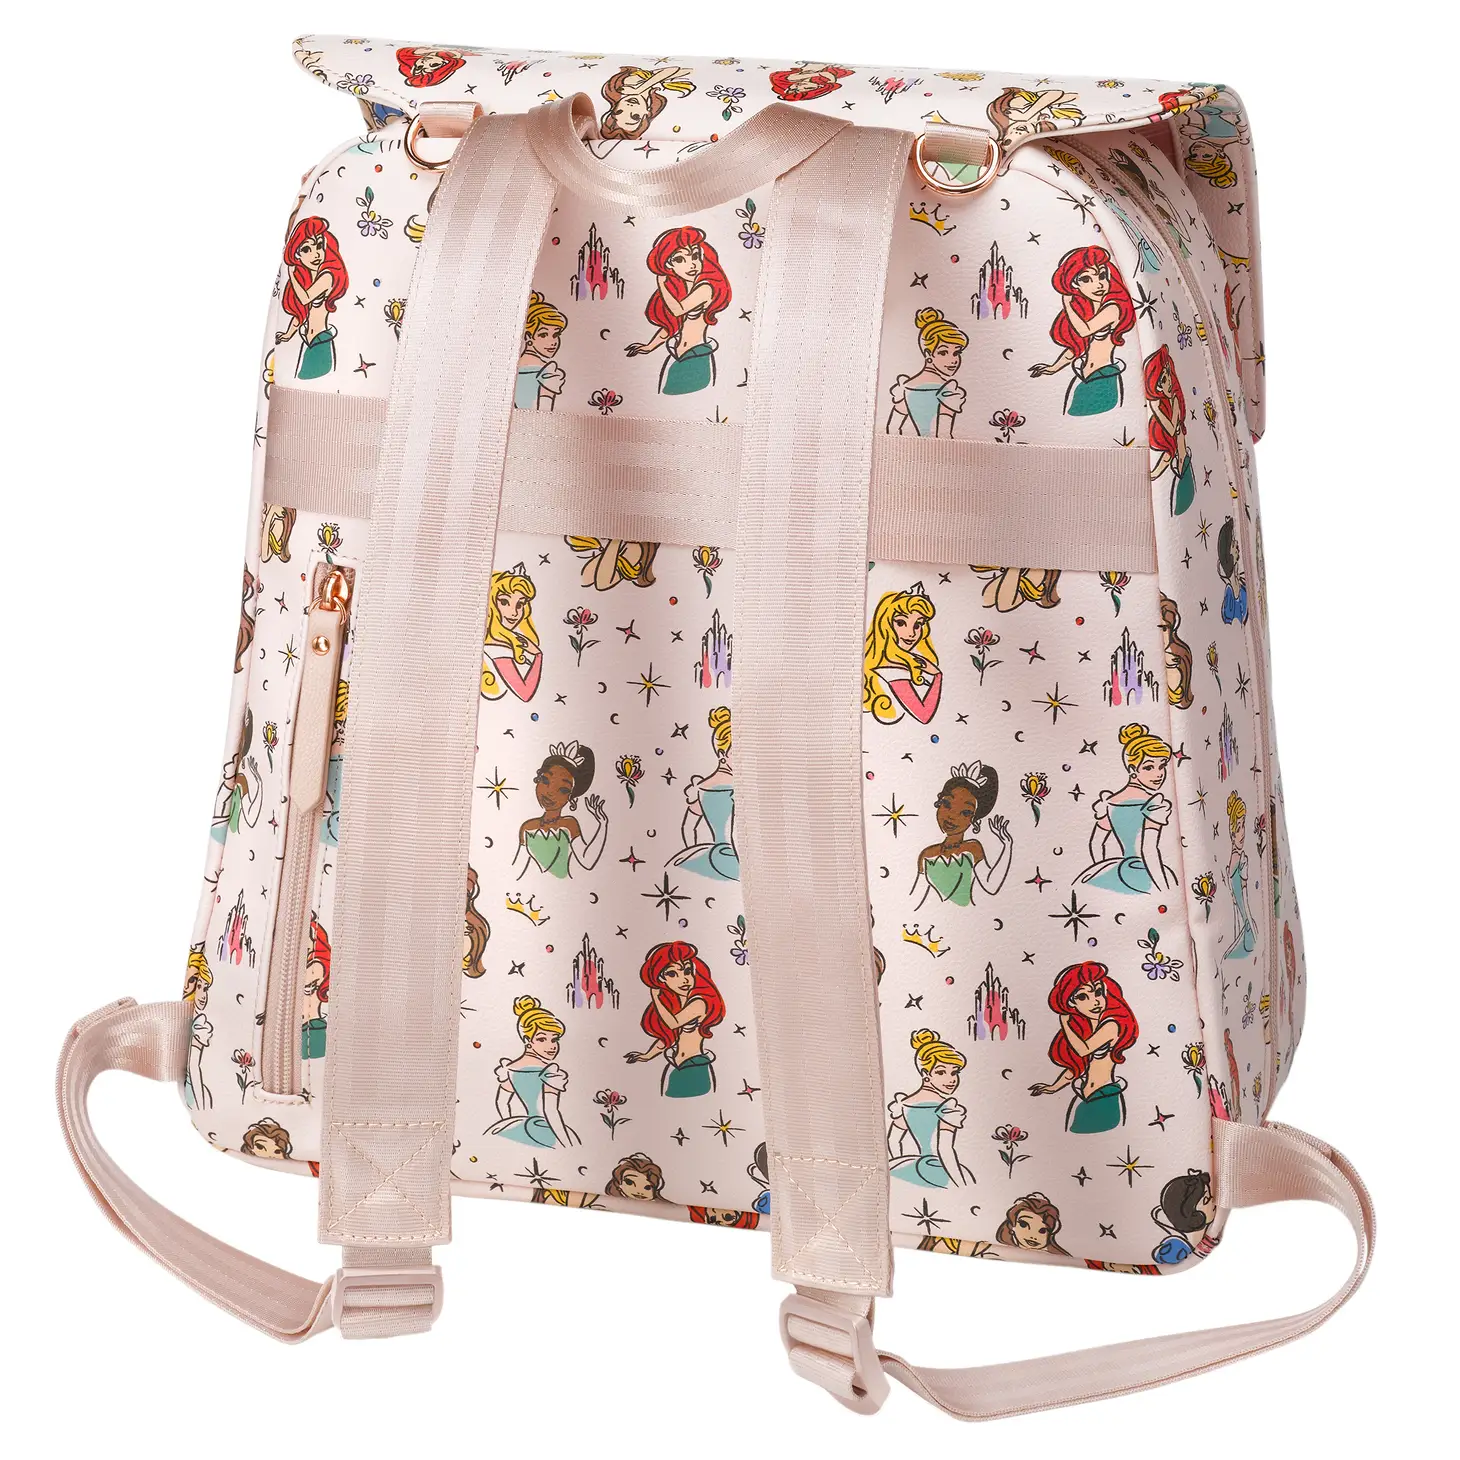 Meta Backpack - Disney Princess